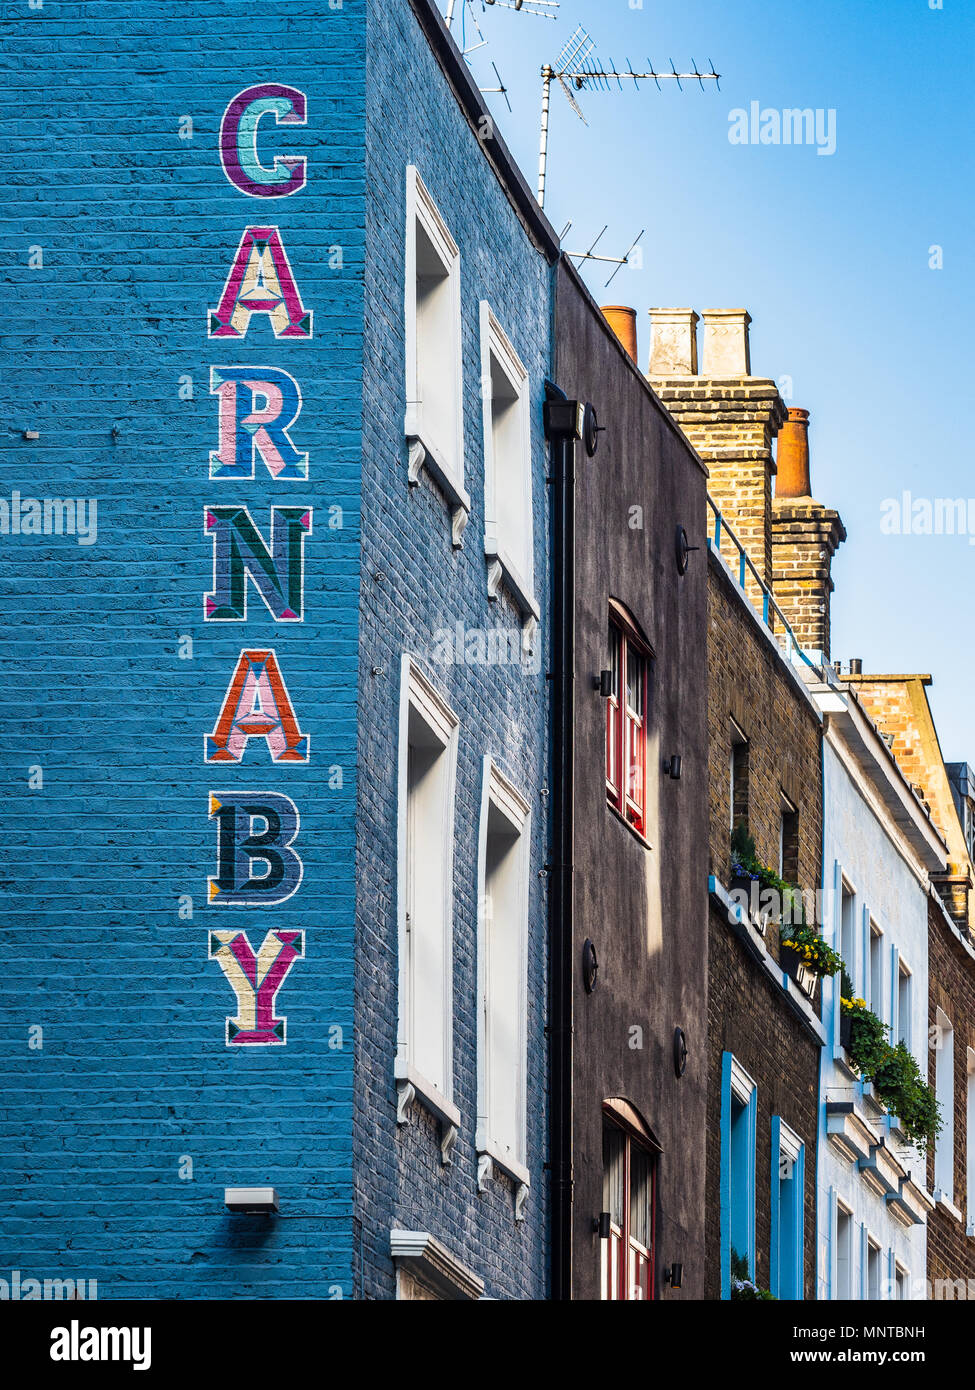 Carnaby Street London - segno dipinto sul lato di un edificio a Londra nel quartiere di Soho, Carnaby è famoso come il cuore della Swinging London nel 60s Foto Stock